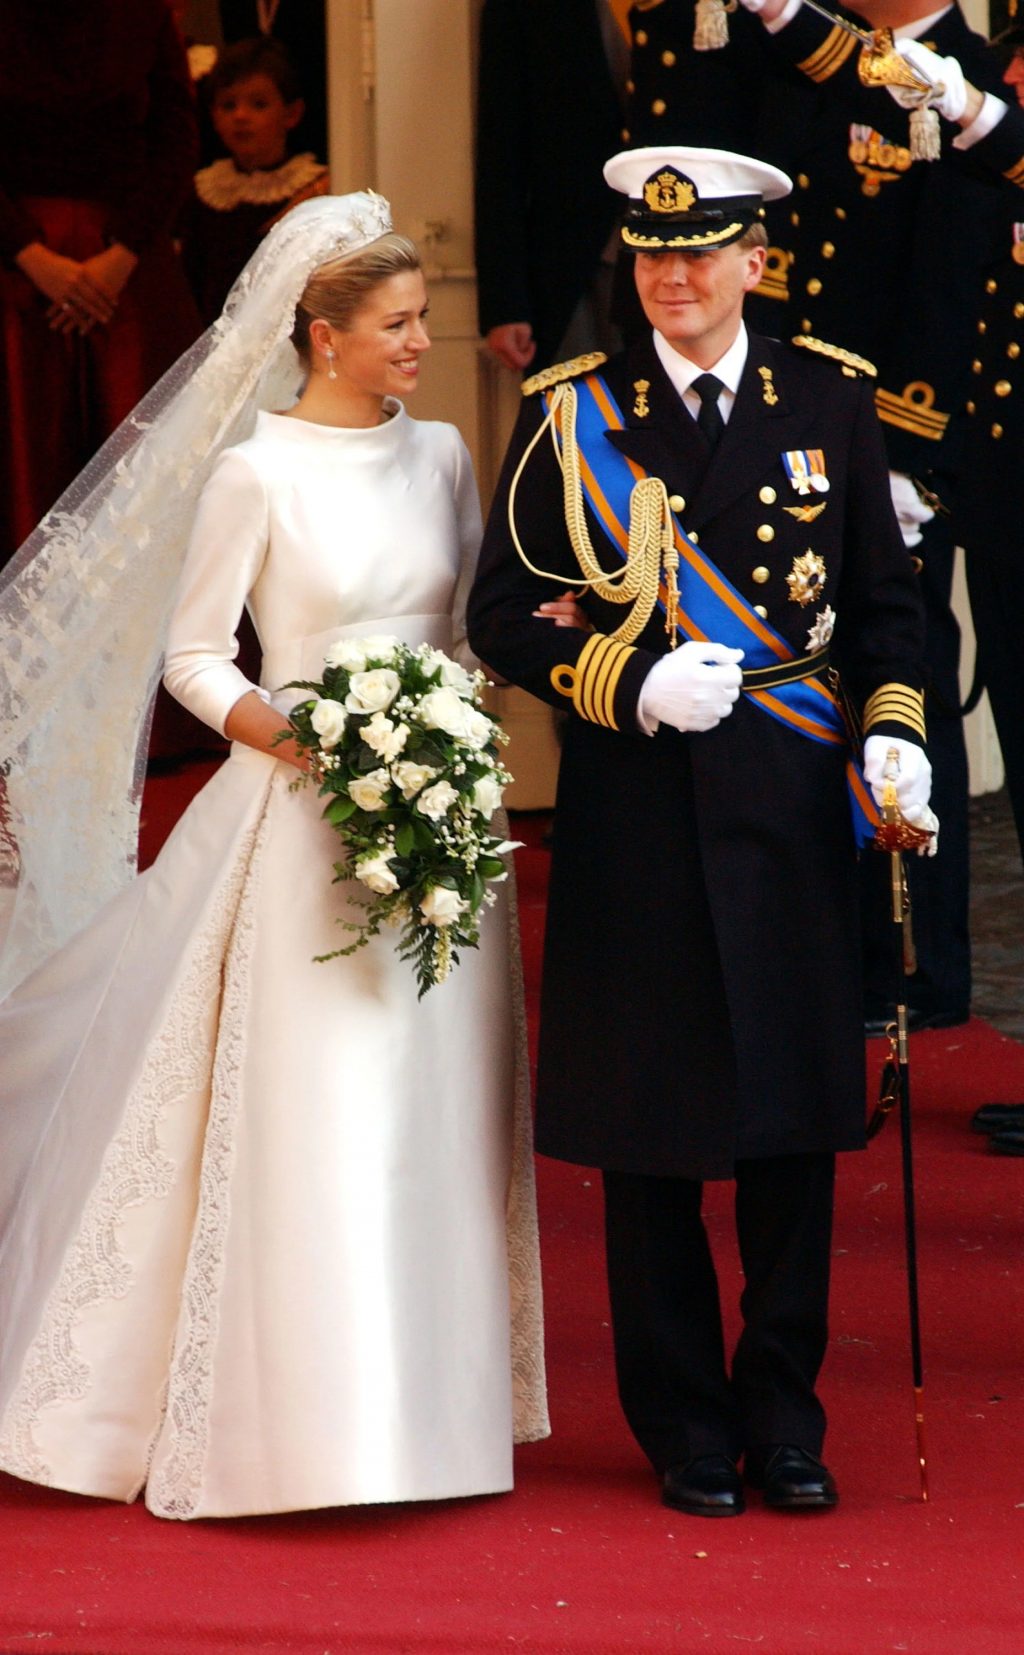 đám cưới của vương hậu nước Nga Maxima